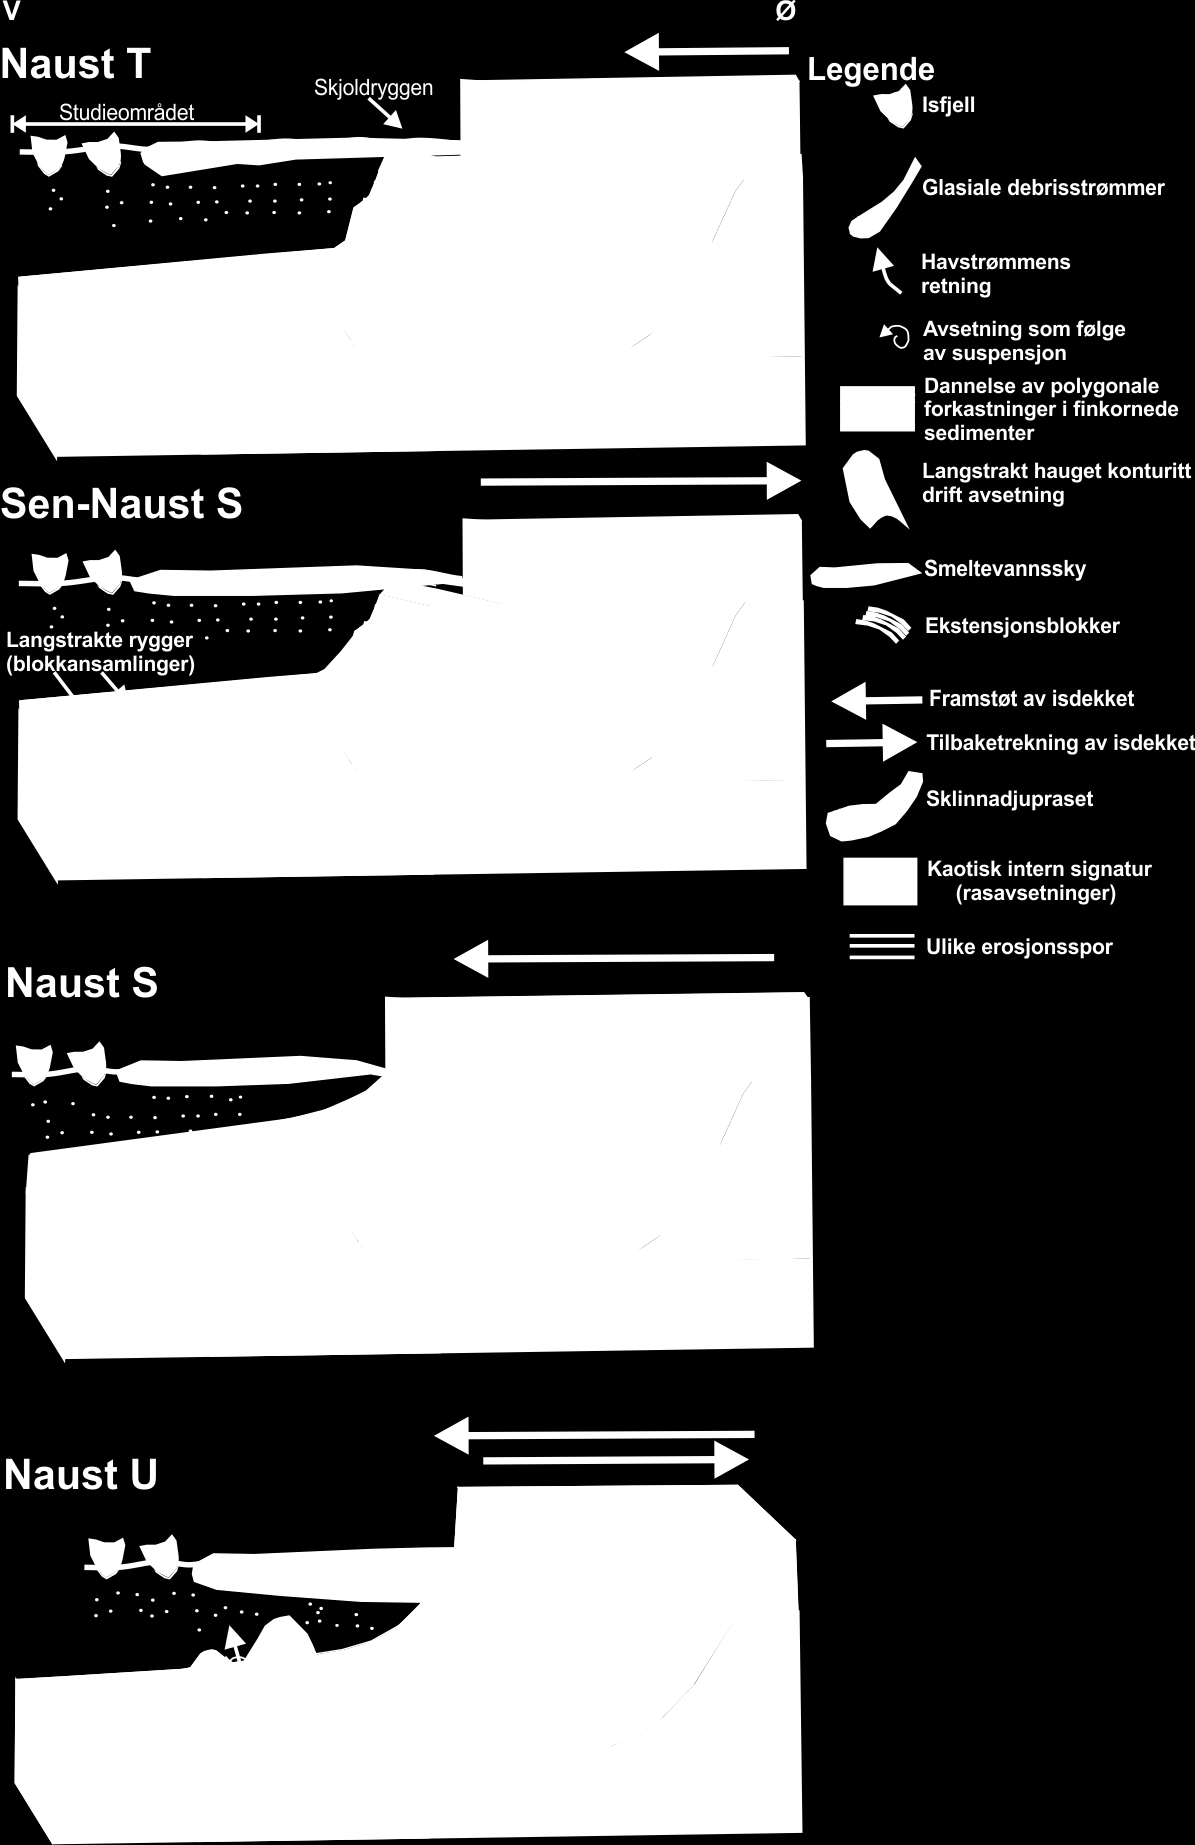 T. FJELLAKSEL KAPITTEL 5 DISKUSJON Figur 5-1: Konseptmodell for utviklingen av studieområdet